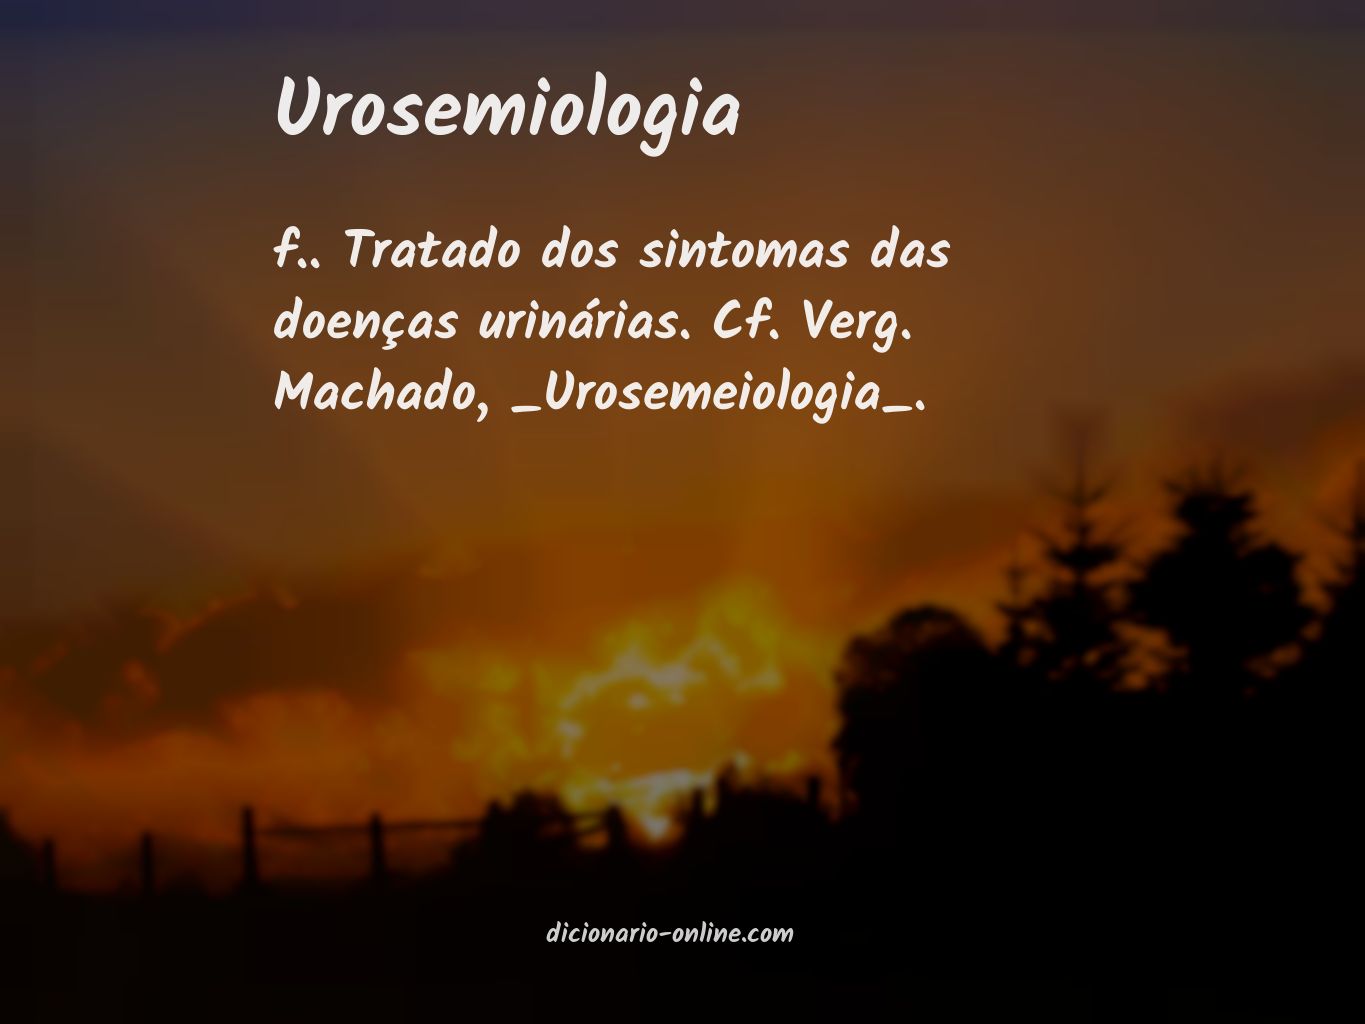 Significado de urosemiologia